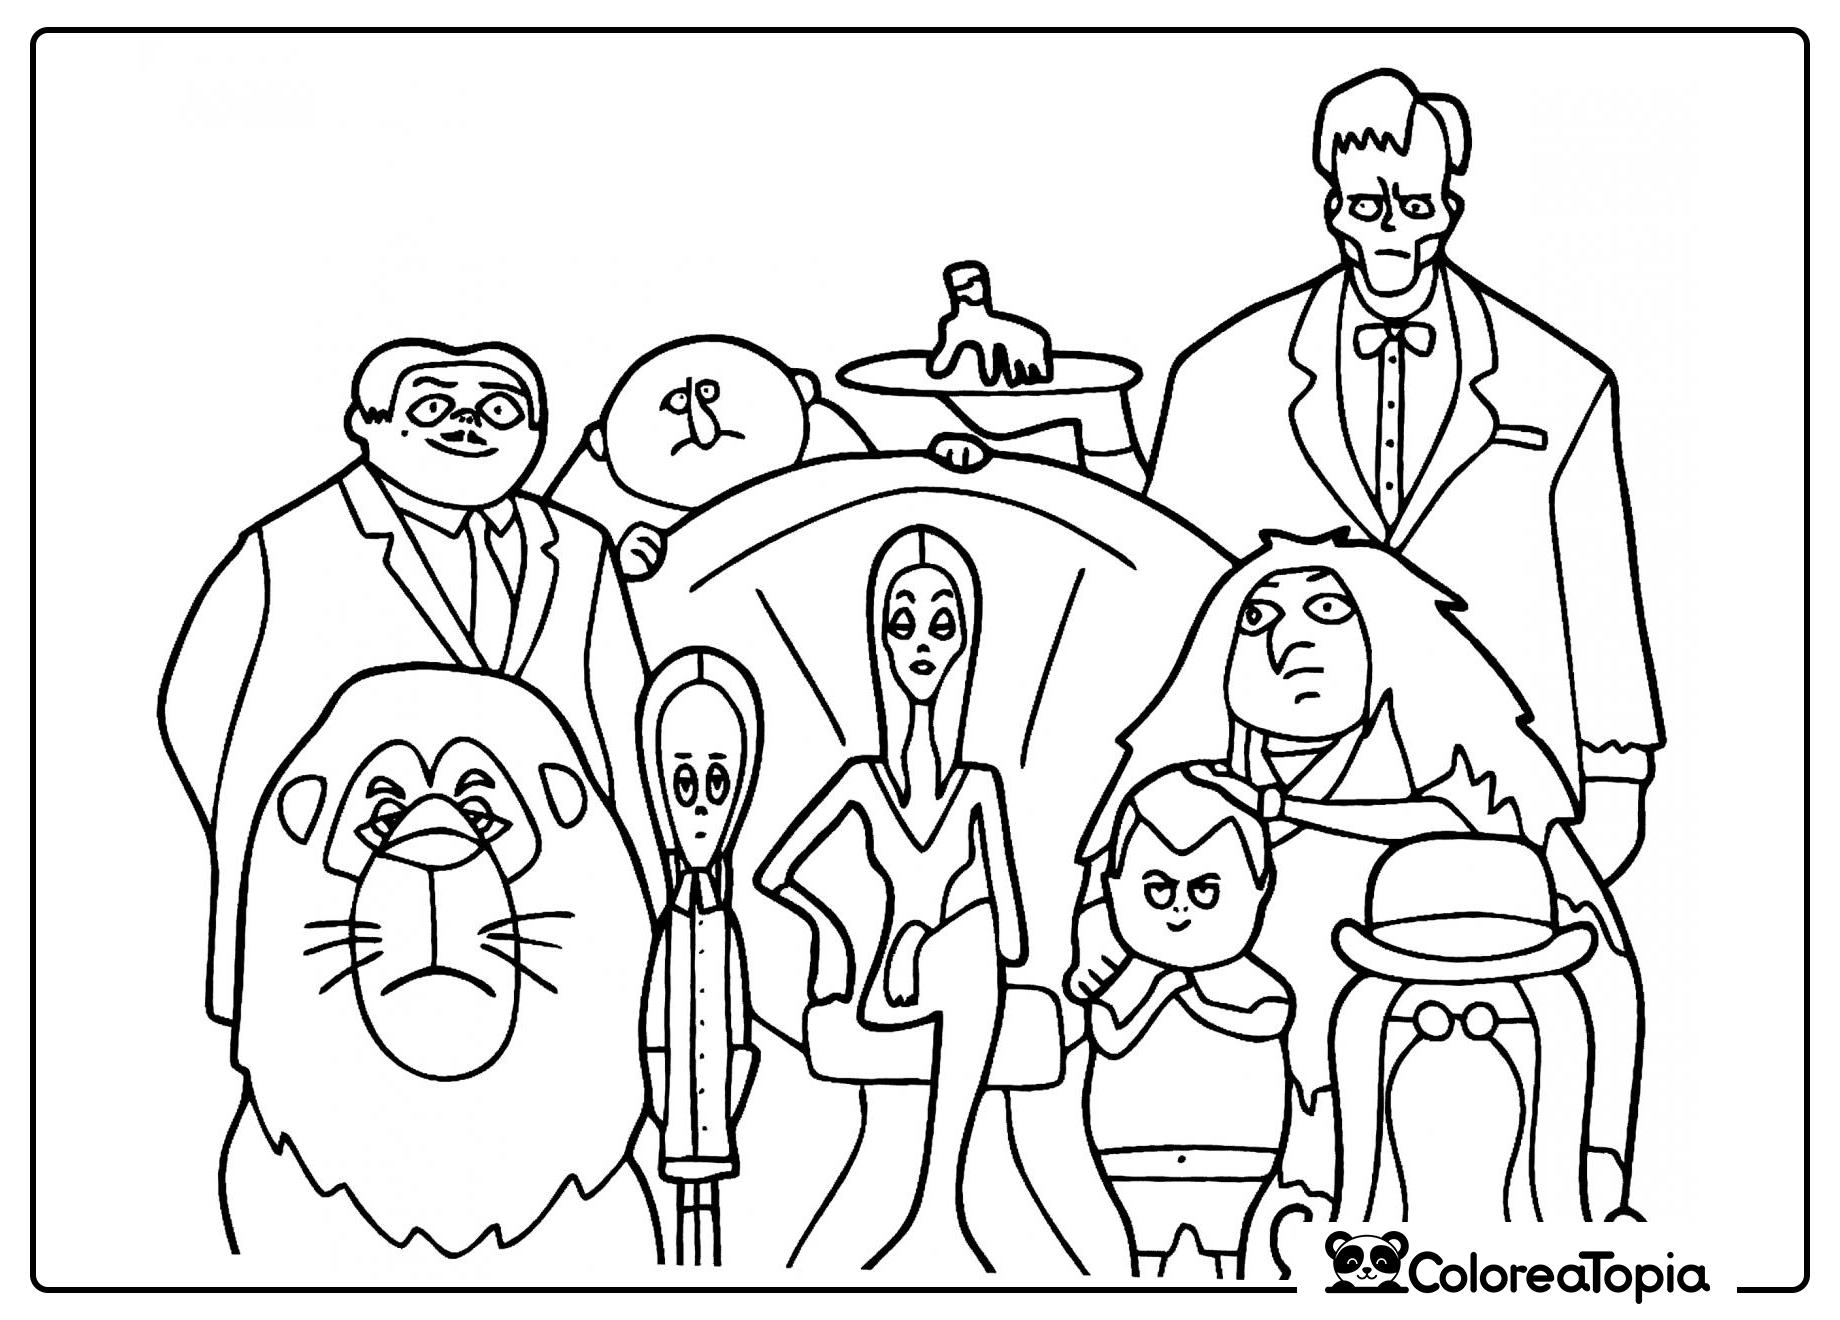 Retrato familiar de los Addams - dibujo para colorear